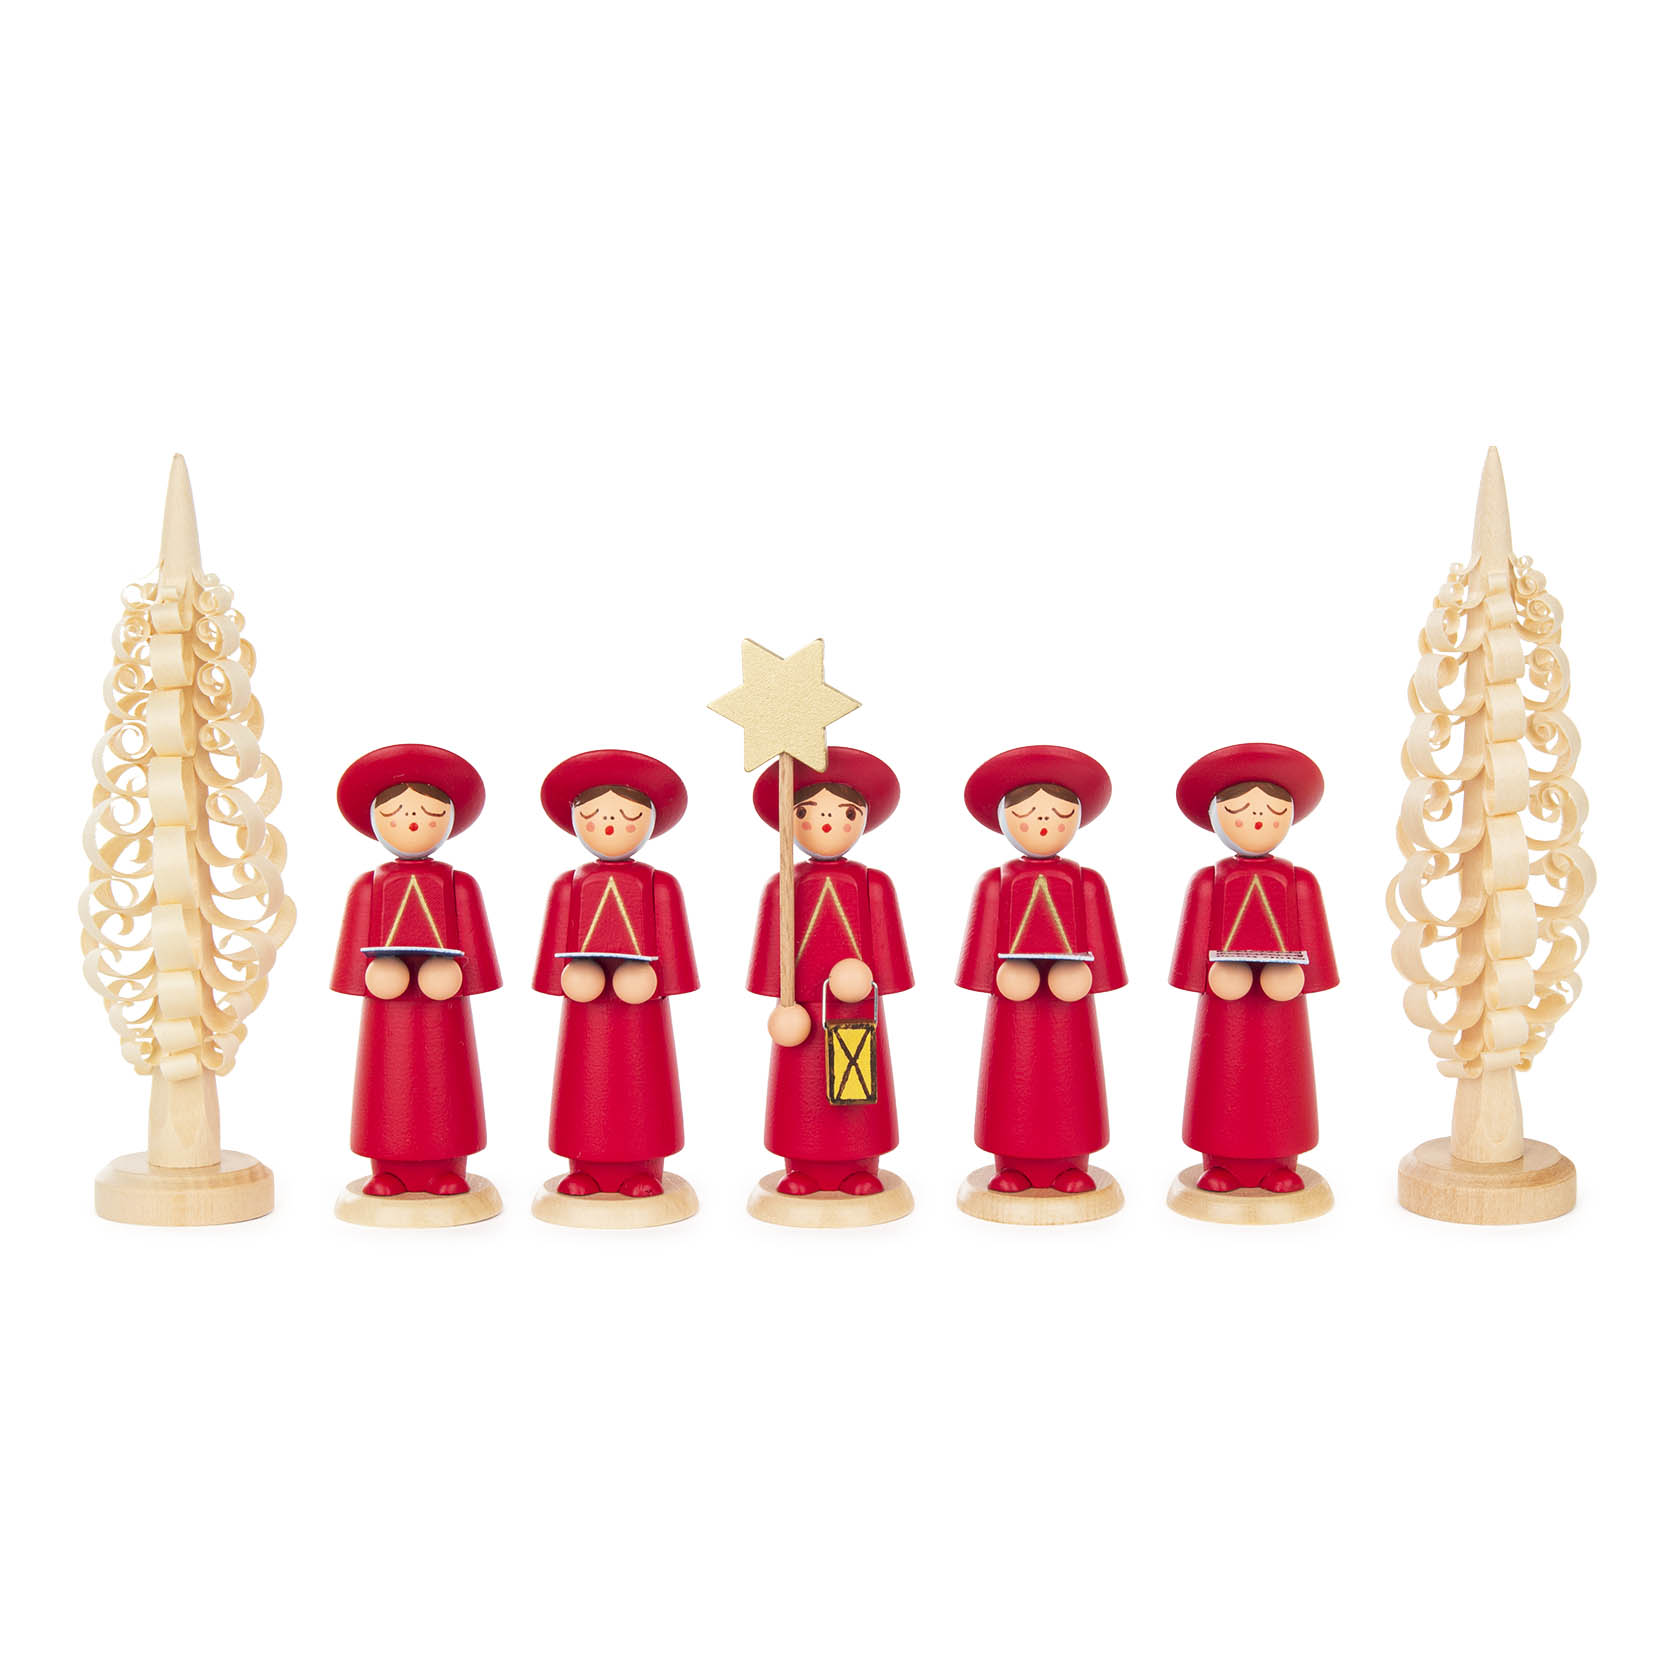 Kurrendefiguren rot mit Spanbäumchen (7) im Dregeno Online Shop günstig kaufen